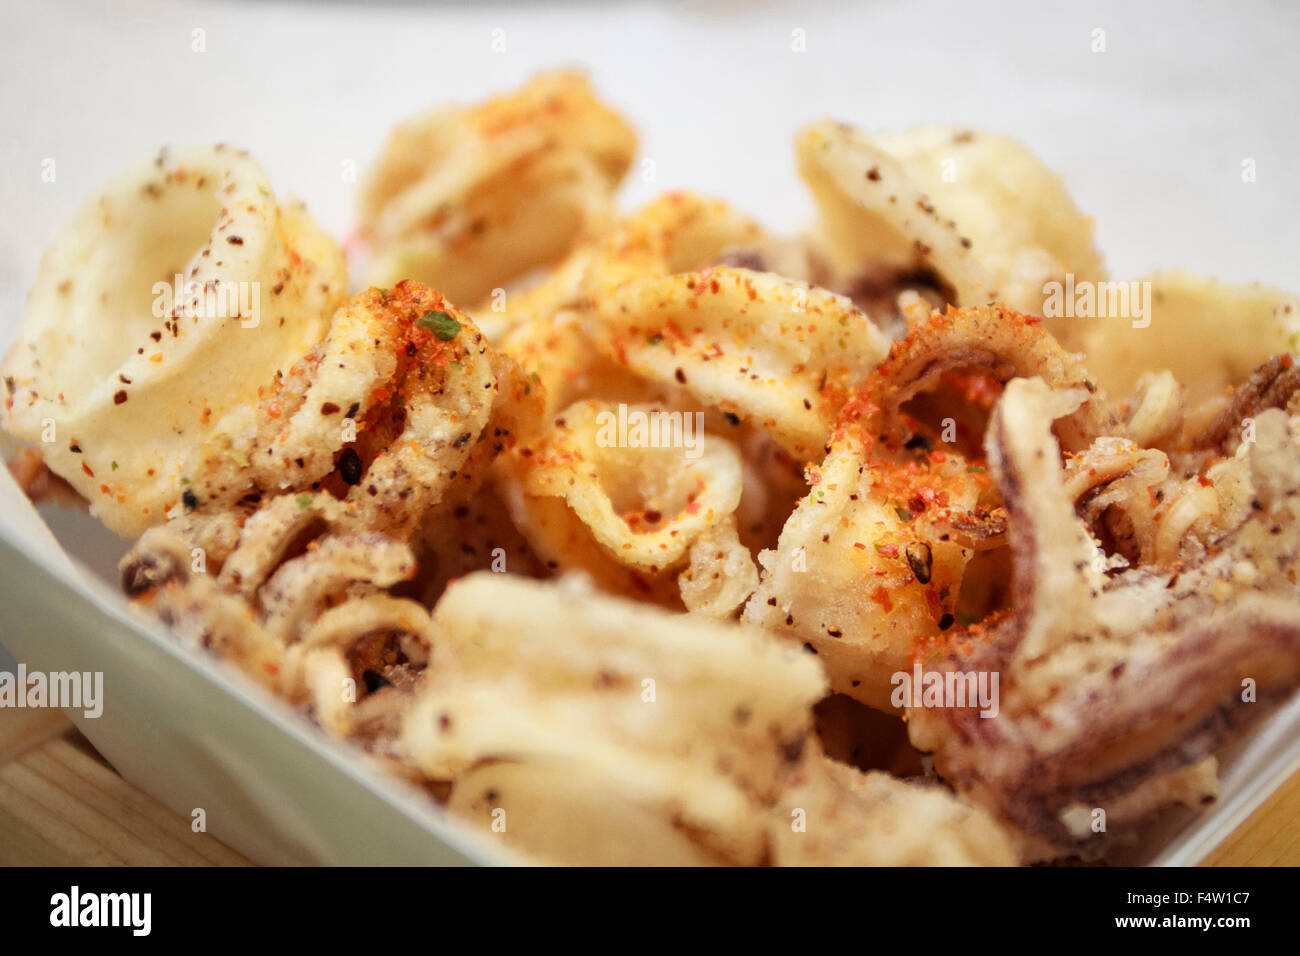 Close-up de un tazón de calamares fritos Foto de stock